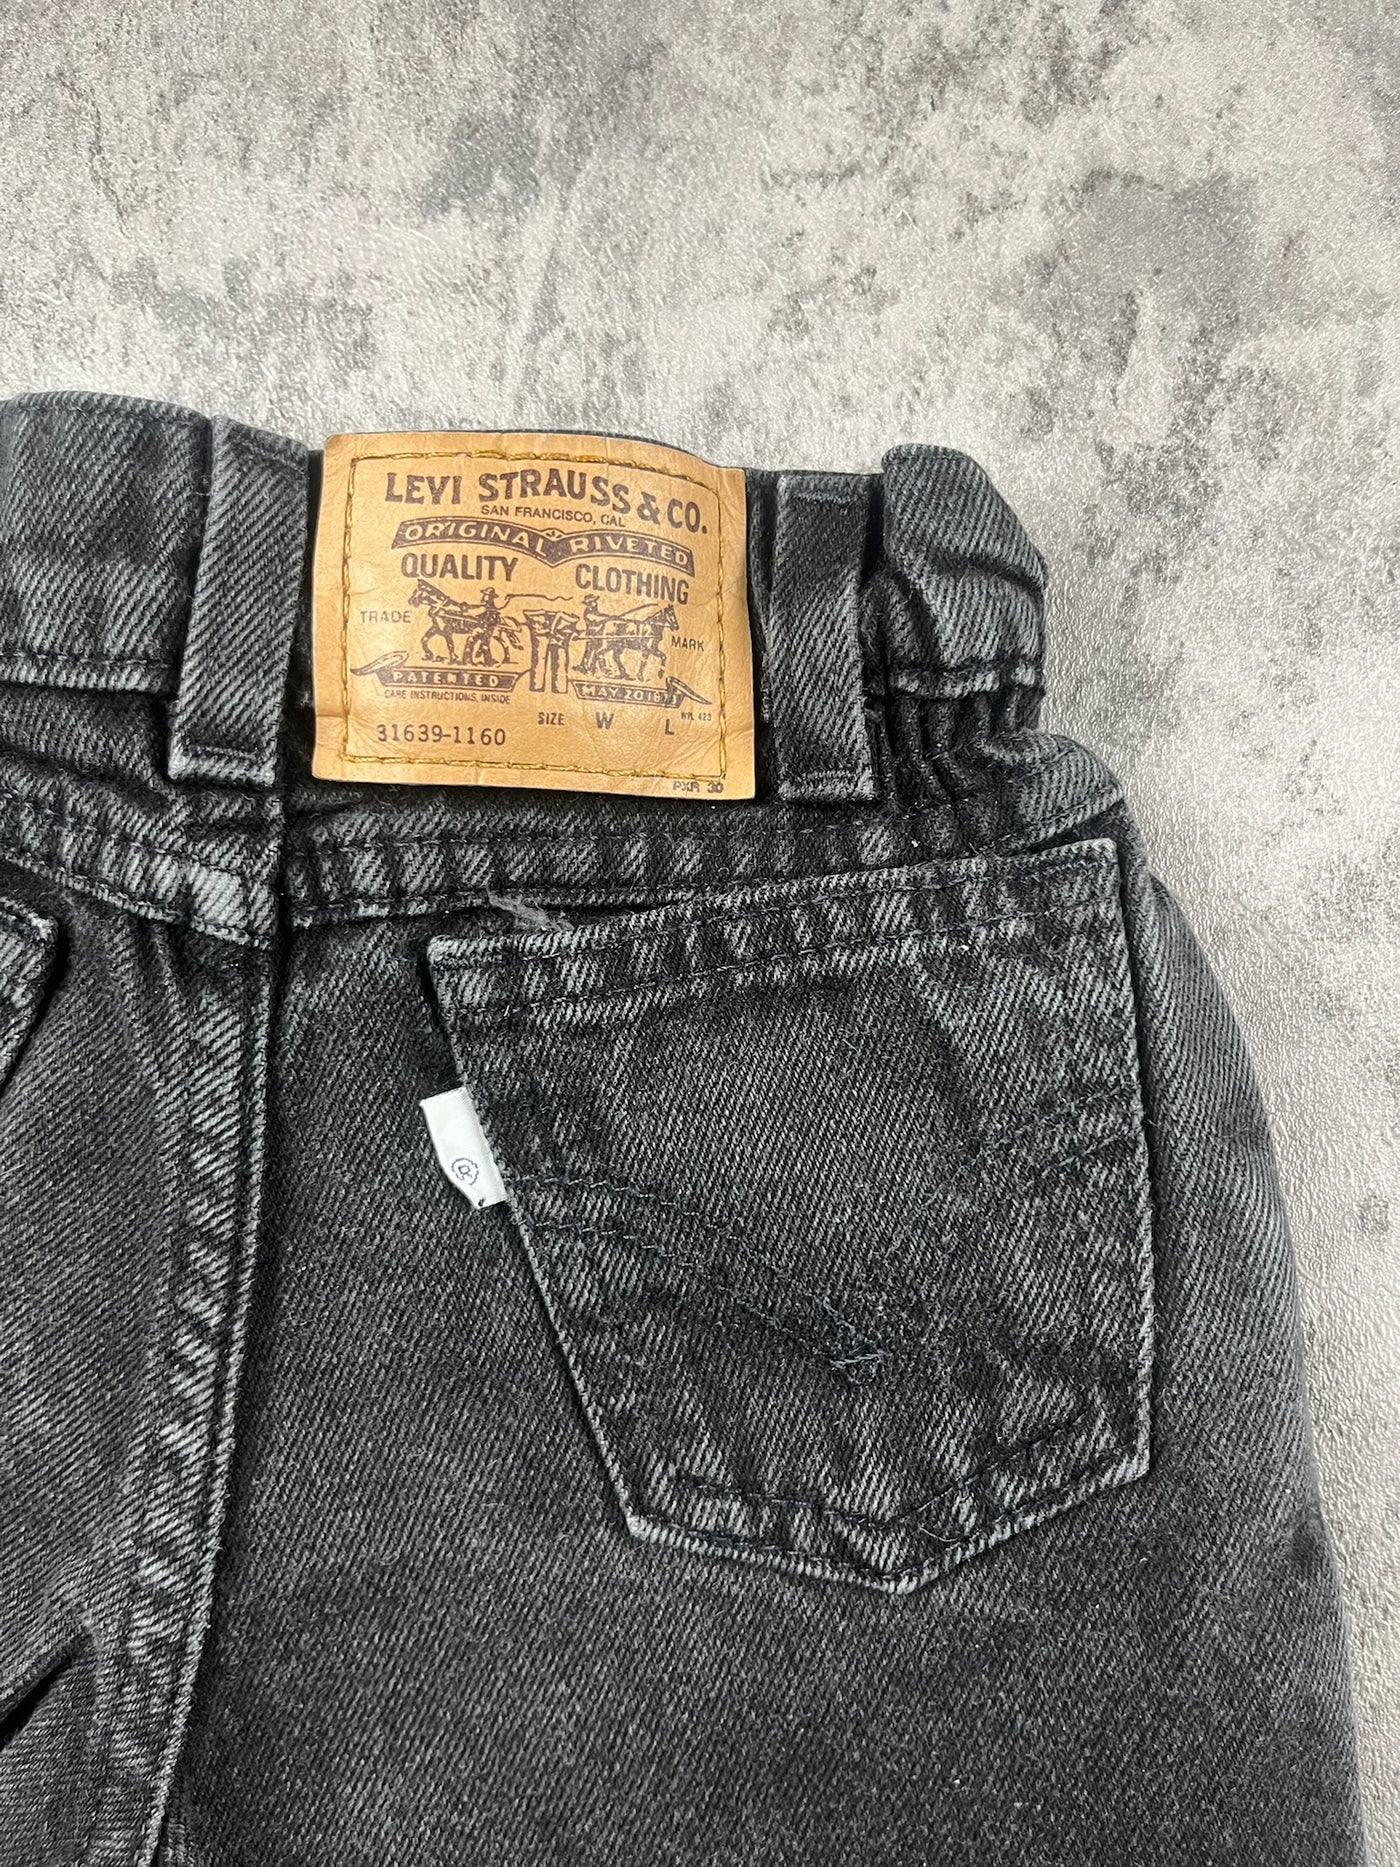 Vintage Levi’s Jeans 2/3T